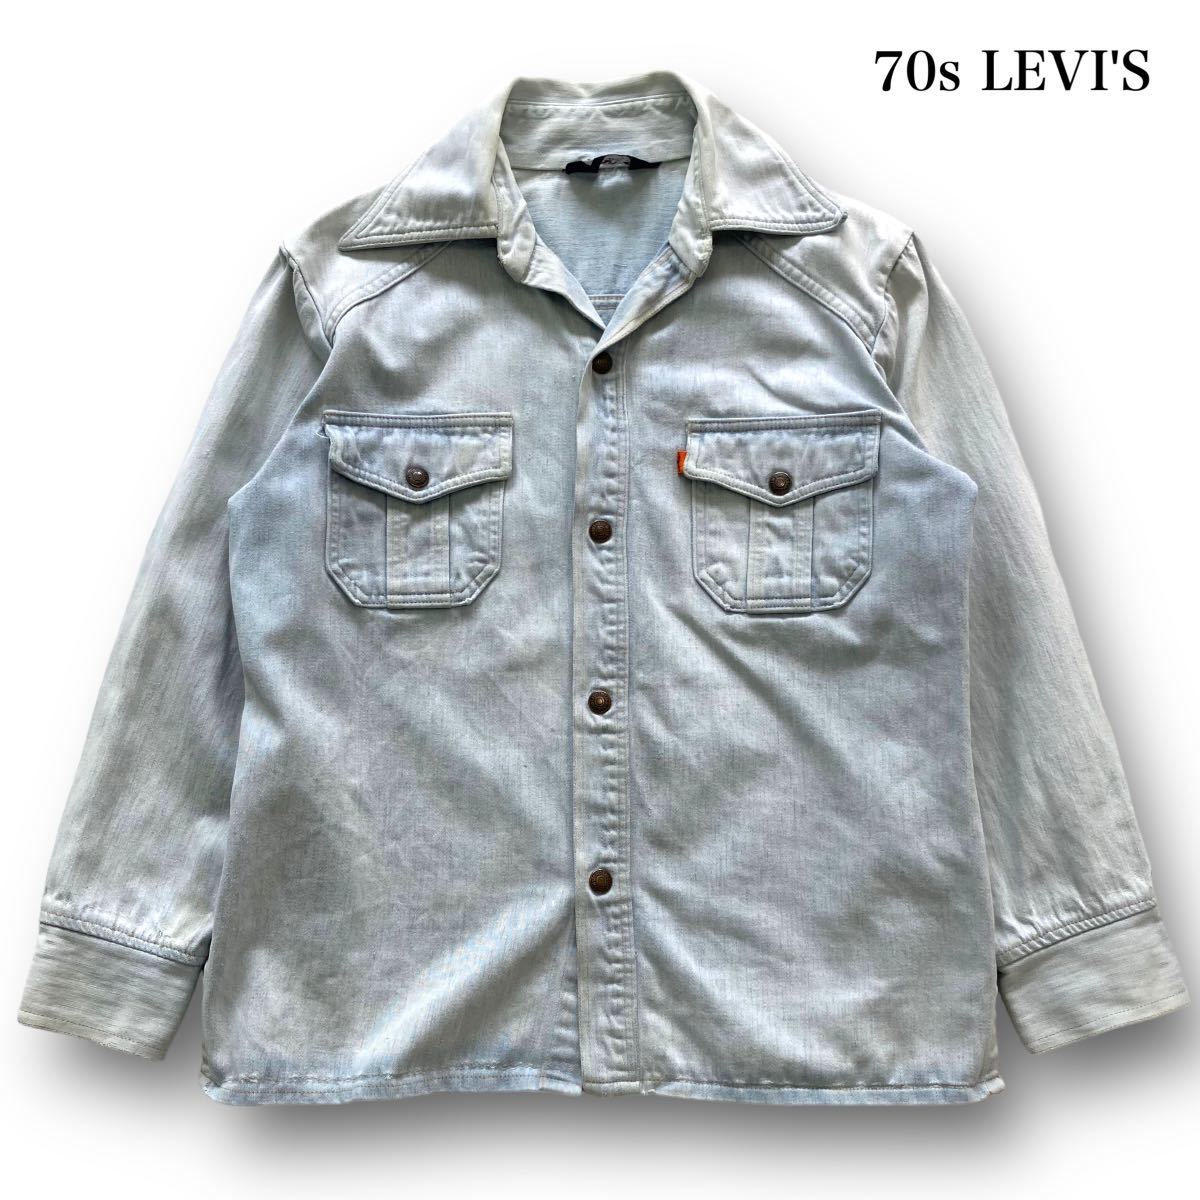 【Levi's】70s リーバイス デニムシャツジャケット ヴィンテージ LEVI'S 70年代 三角タグ 紺色タグ カッパーボタン オレンジタブ 古着